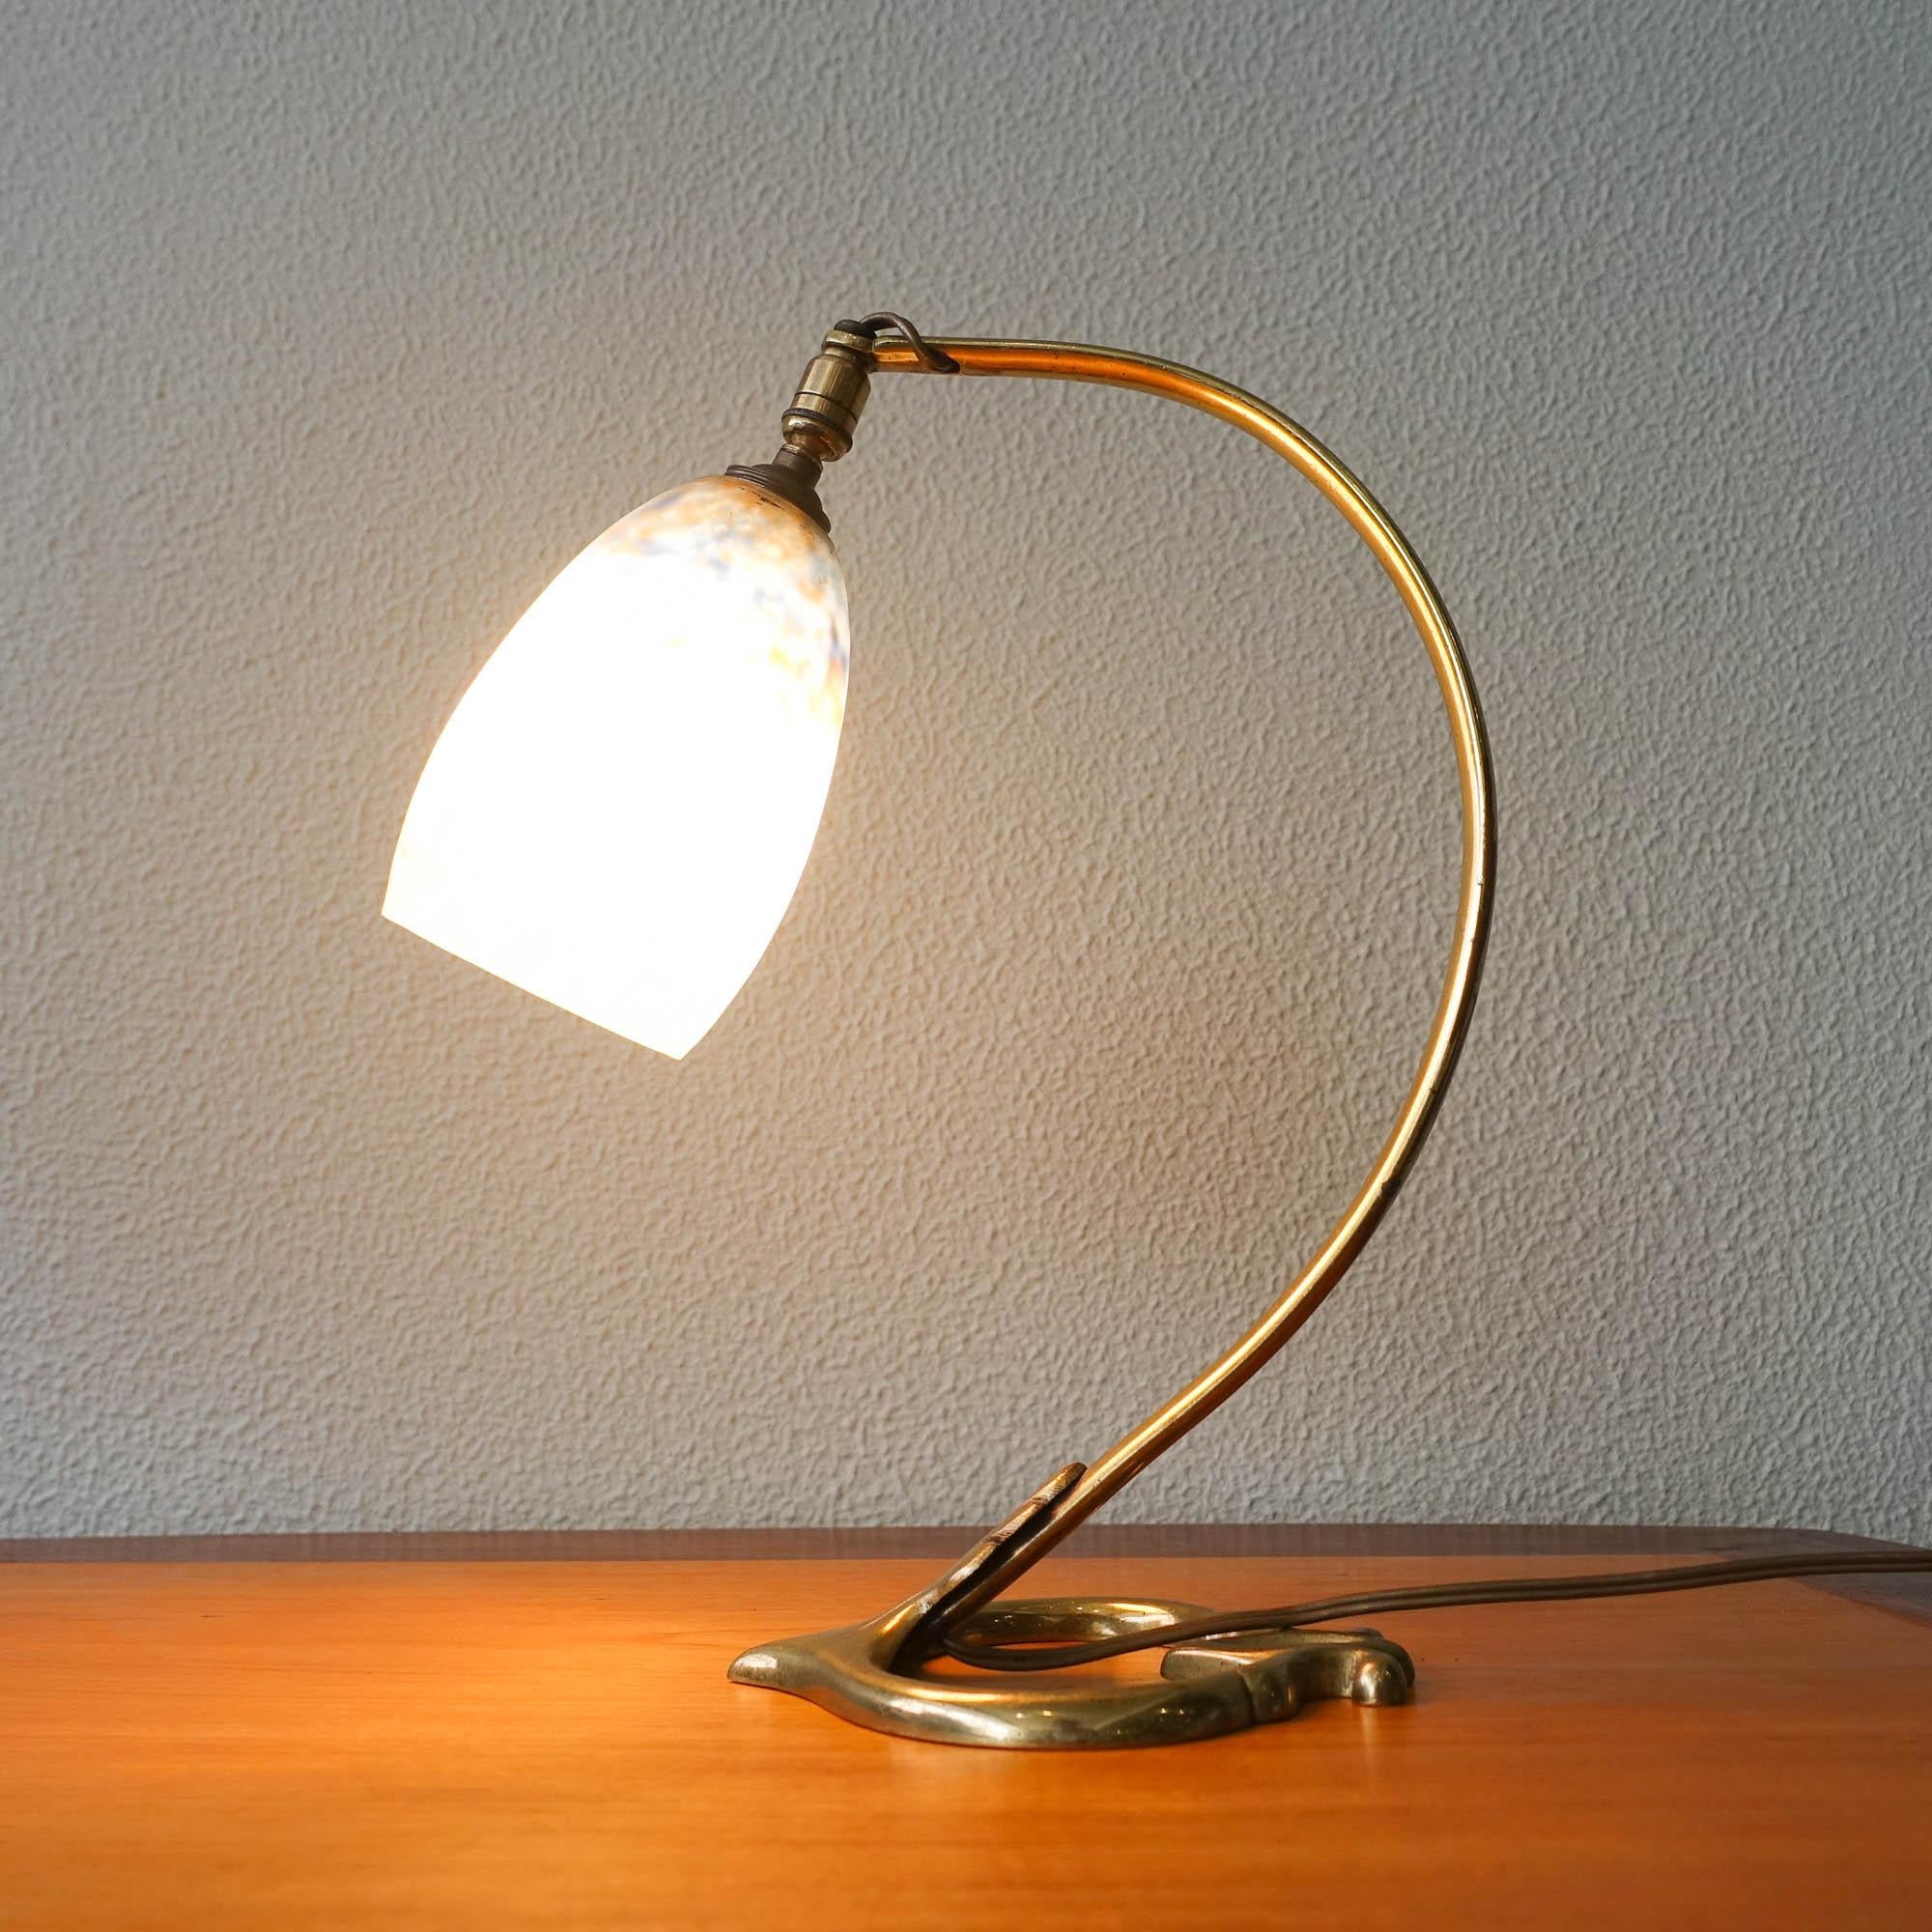 Cette lampe de table Art nouveau a été conçue et produite par Daum Nancy, en France, dans les années 1920. Elle possède un abat-jour en verre soufflé qui est suspendu dans un luminaire en bronze massif au design organique et incurvé, très